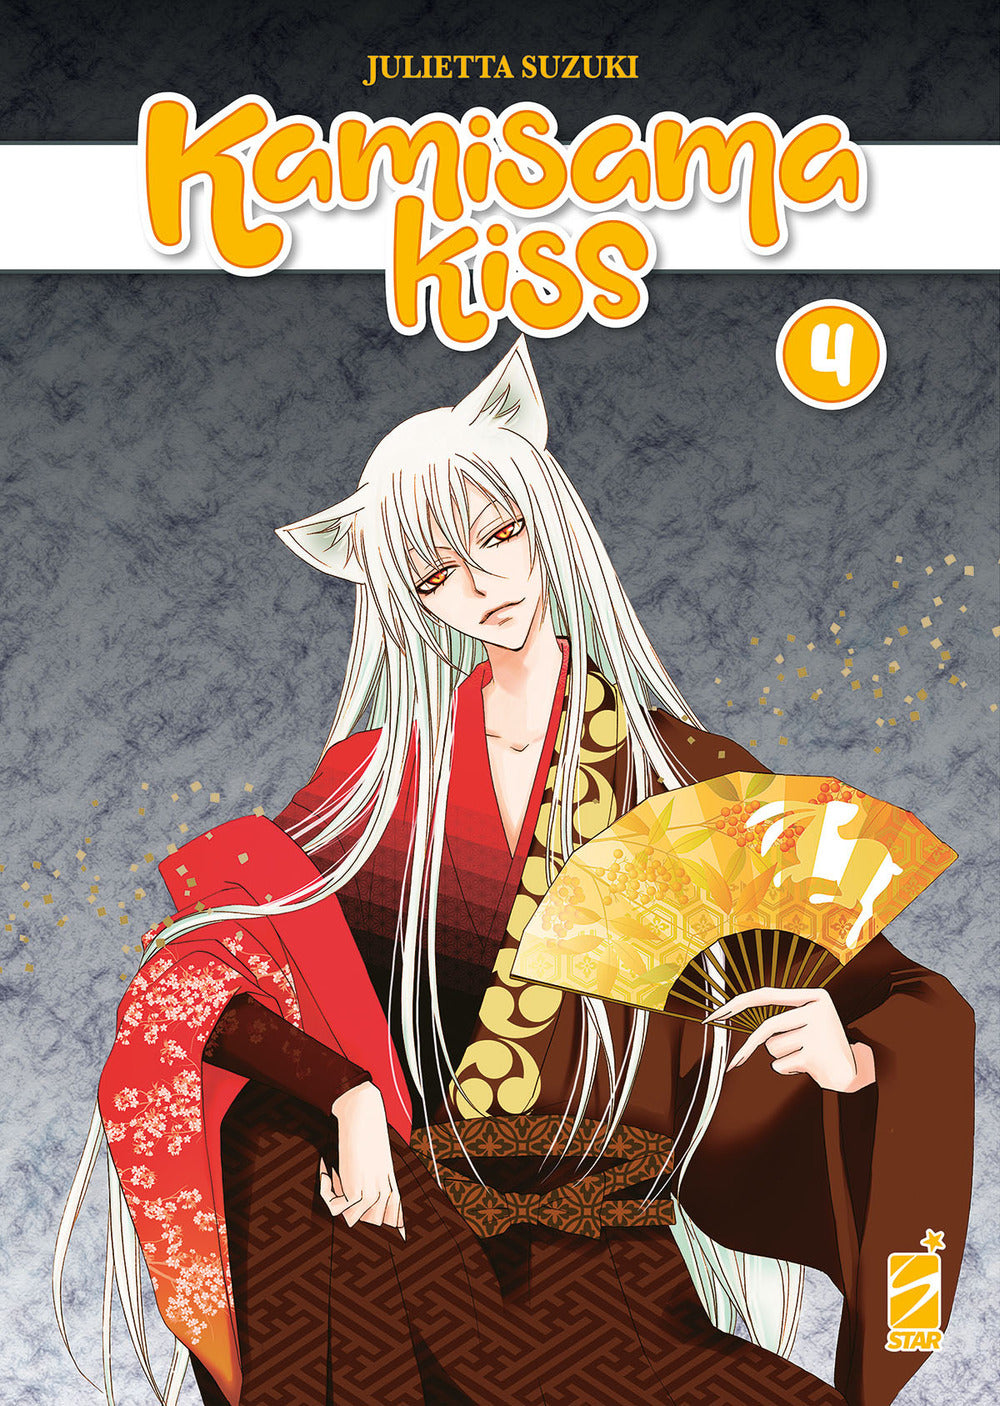 Kamisama kiss. New edition. Vol. 4